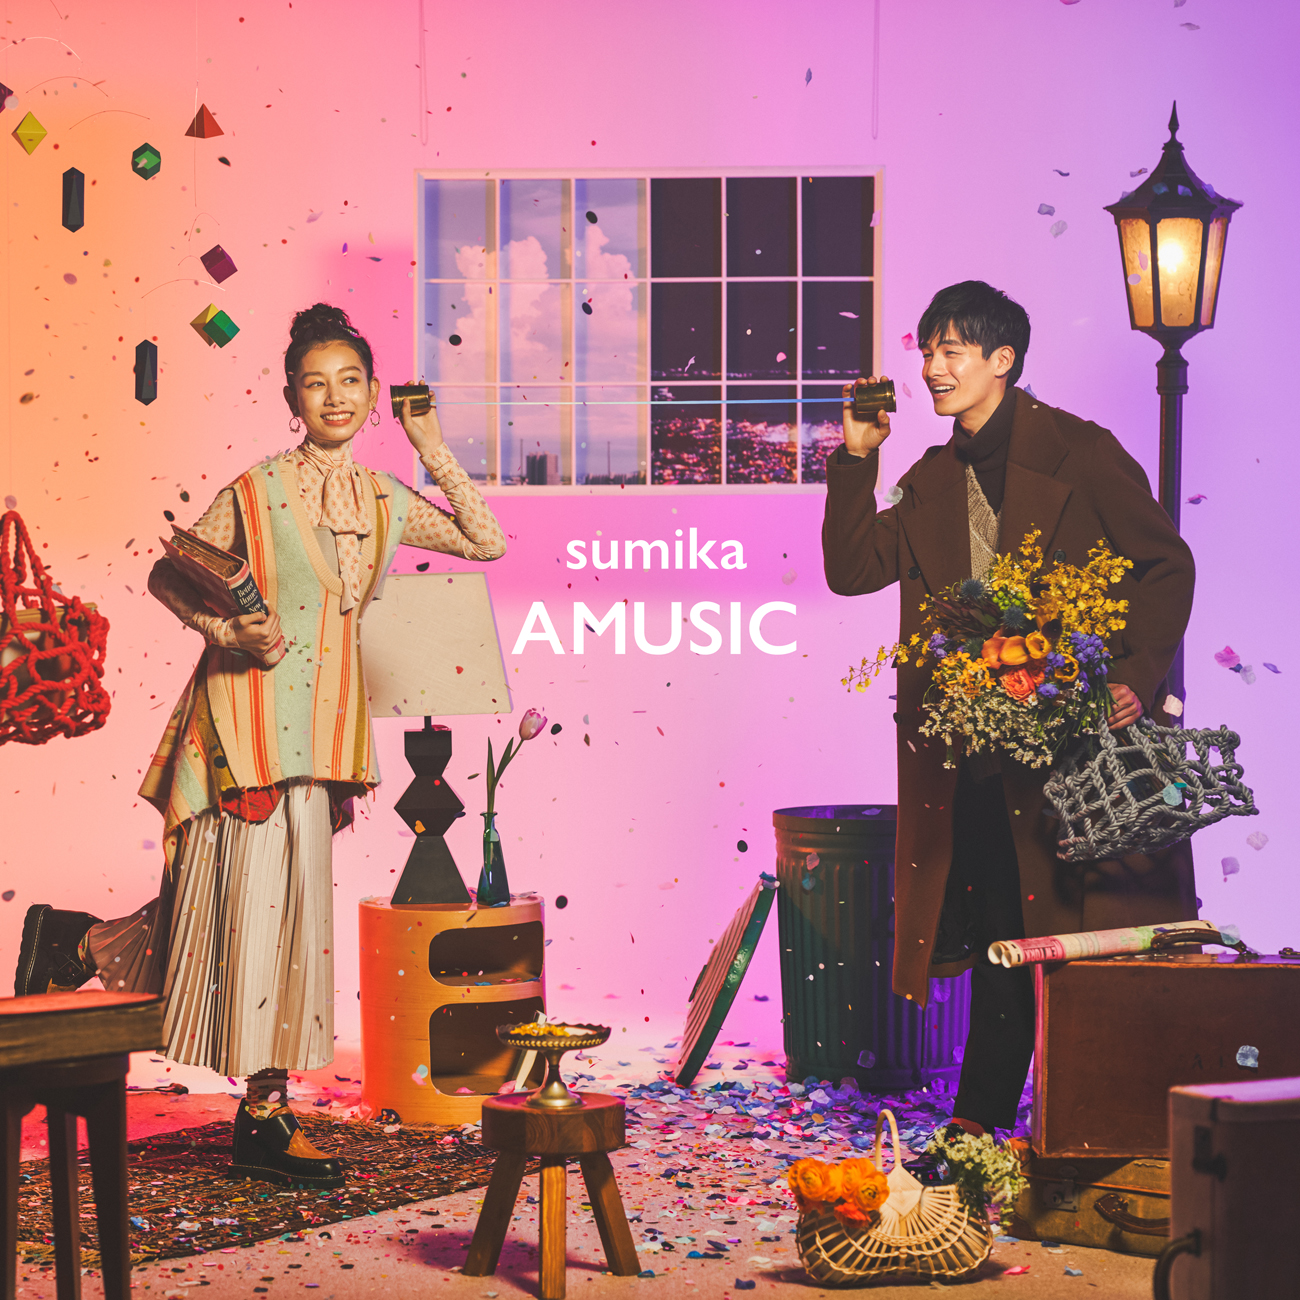 Sumika 3月3日発売サード フルアルバム Amusic より 全曲試聴ティザー音源を公開 株式会社ソニー ミュージックレーベルズのプレスリリース